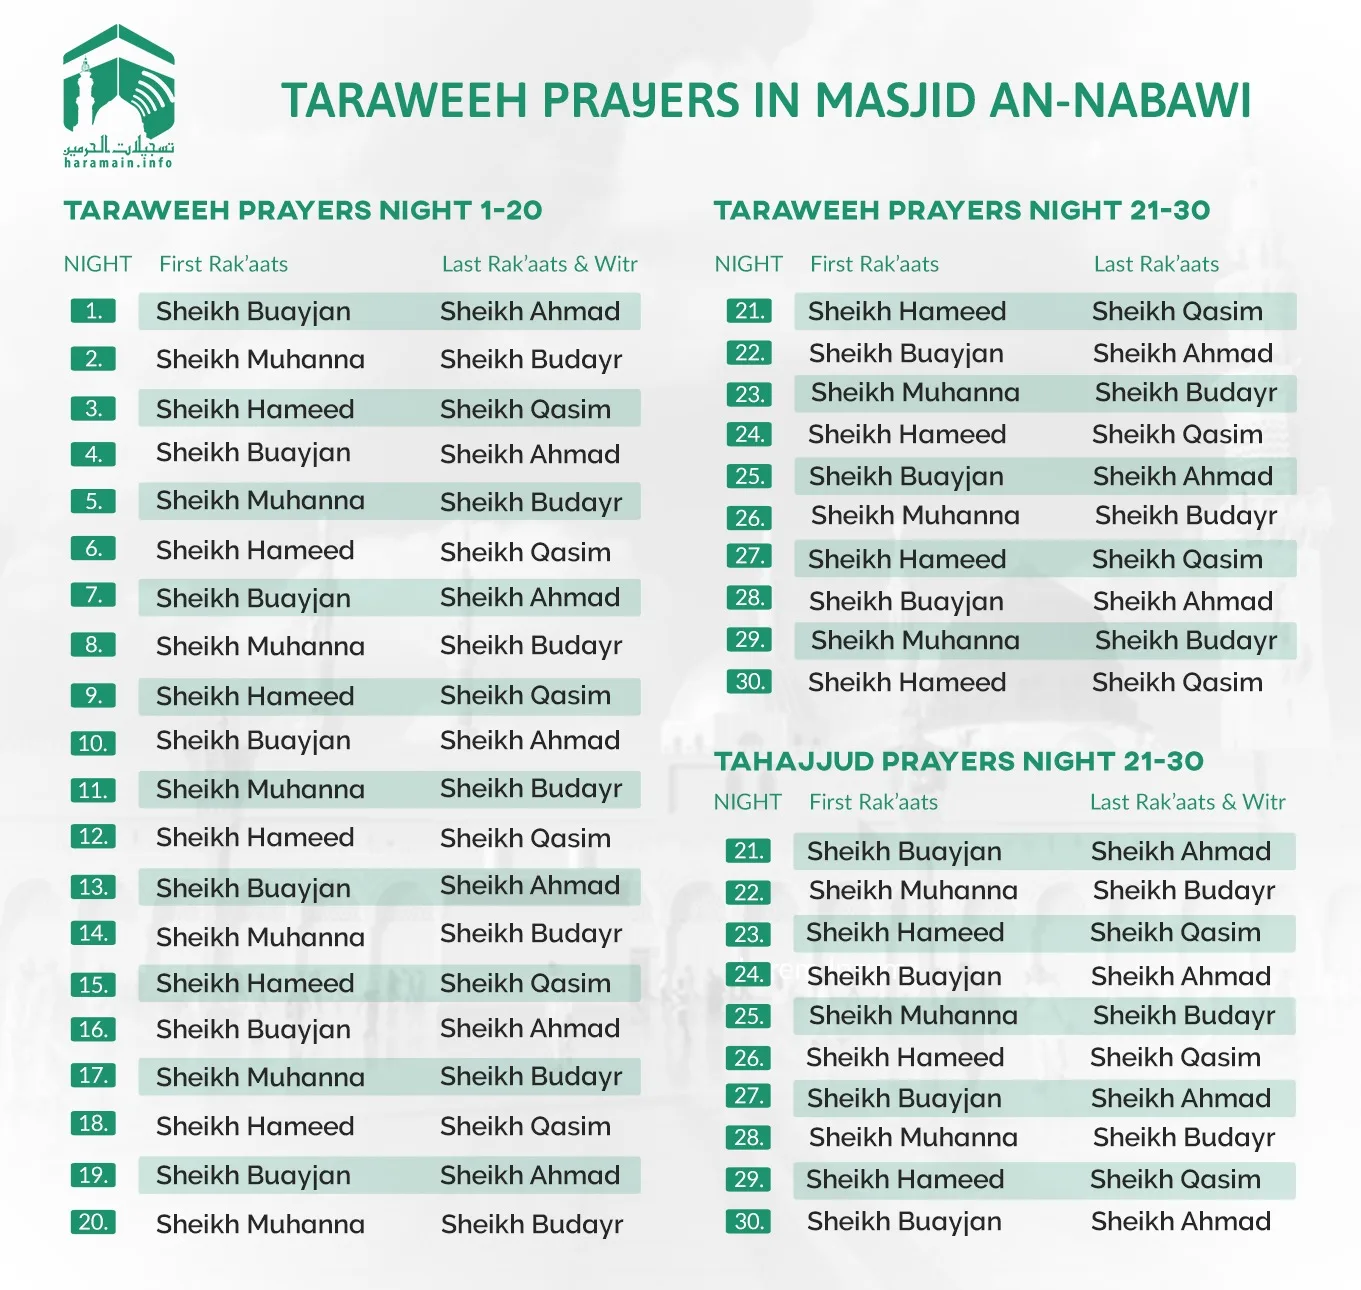 Taraweeh and Tahajjud Schedule of Ramadan 2023 for Masjid Al Haram & Masjid Al Nabawi